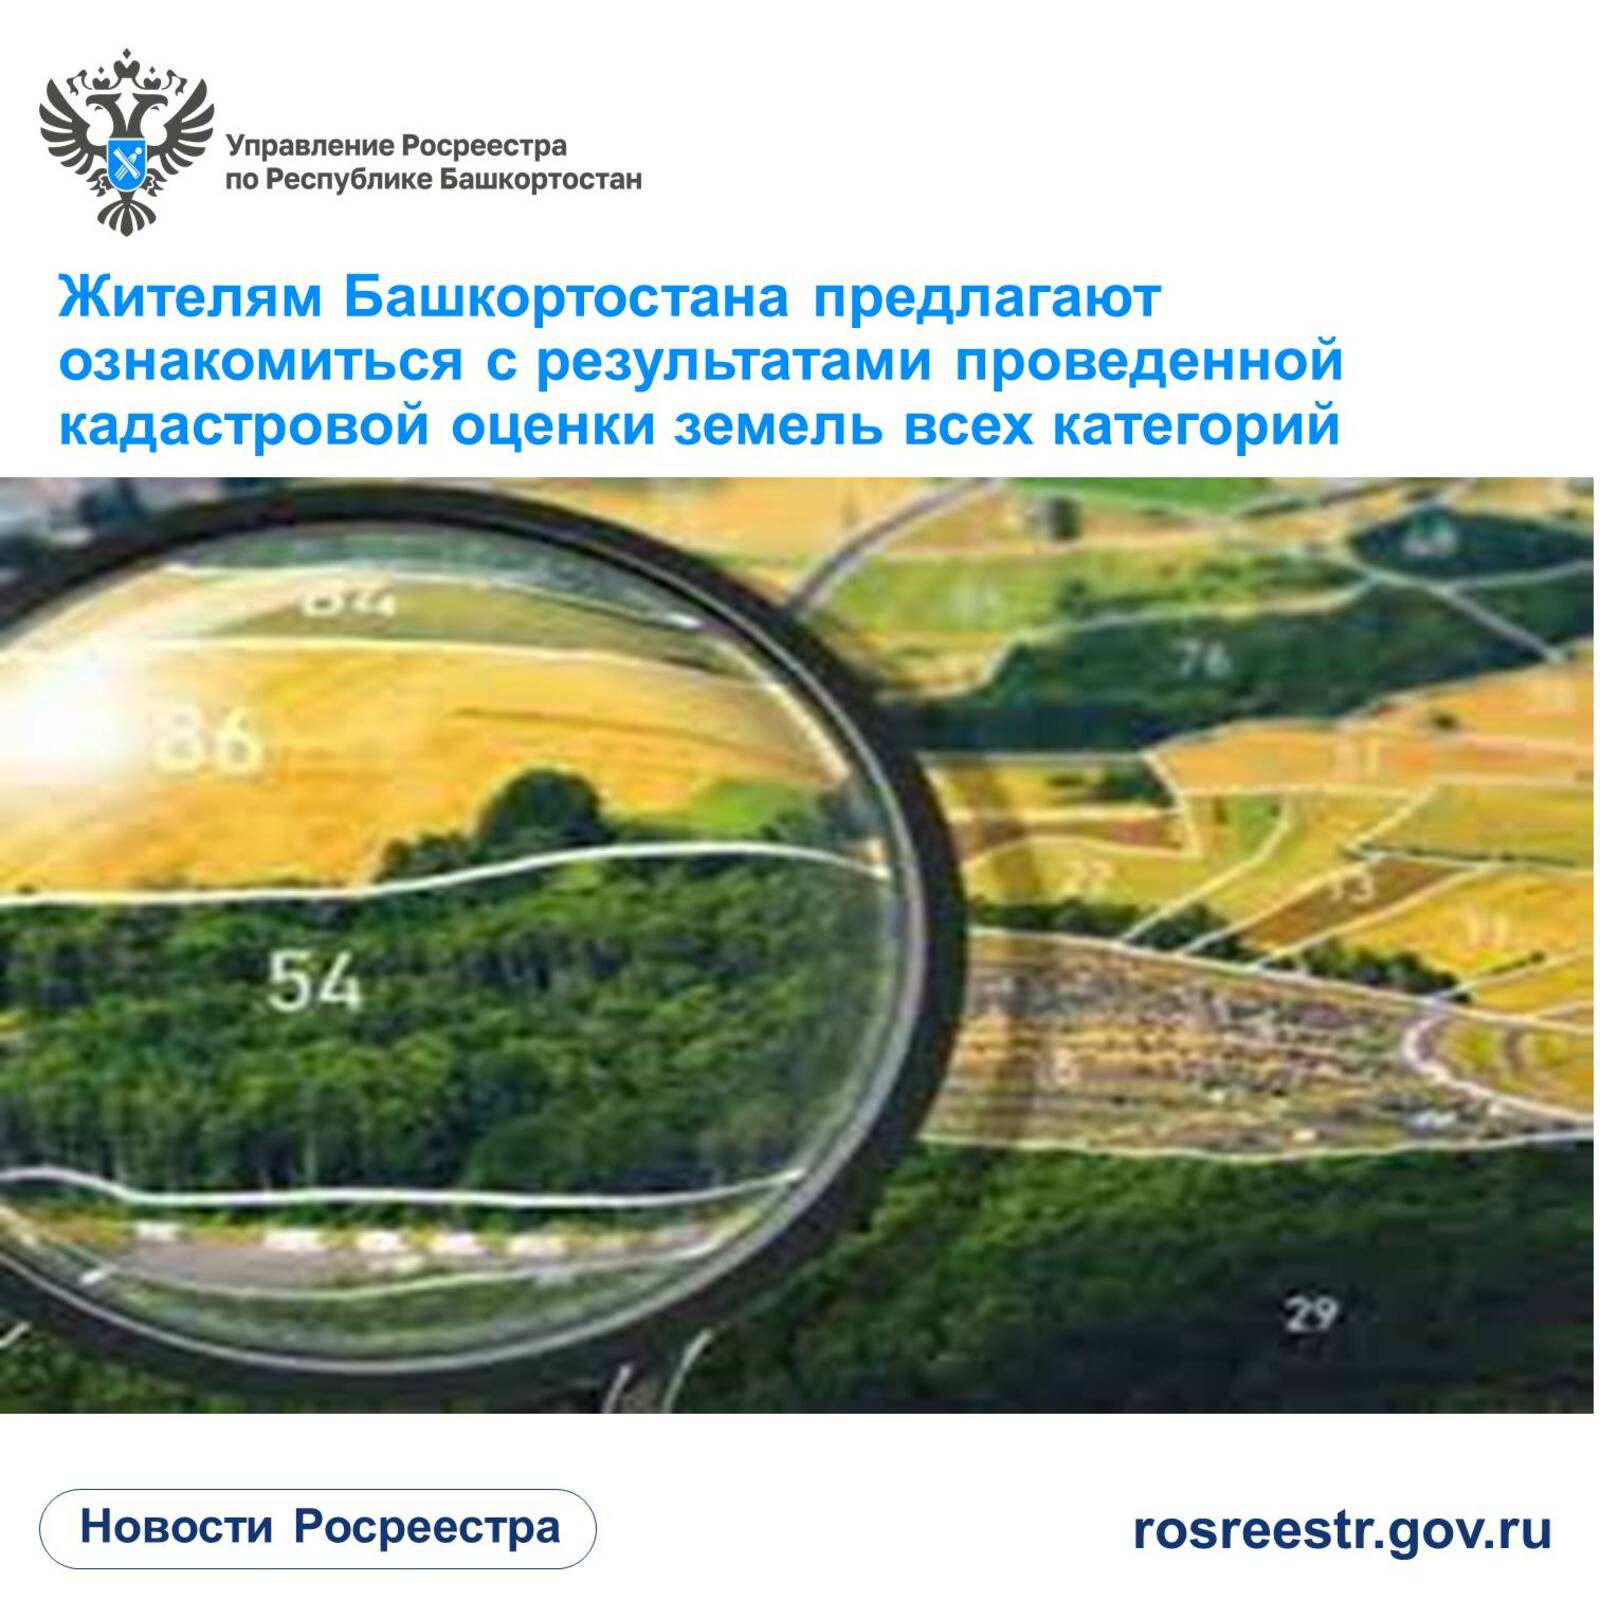 Жителям Башкортостана предлагают ознакомиться с результатами проведенной кадастровой оценки земель